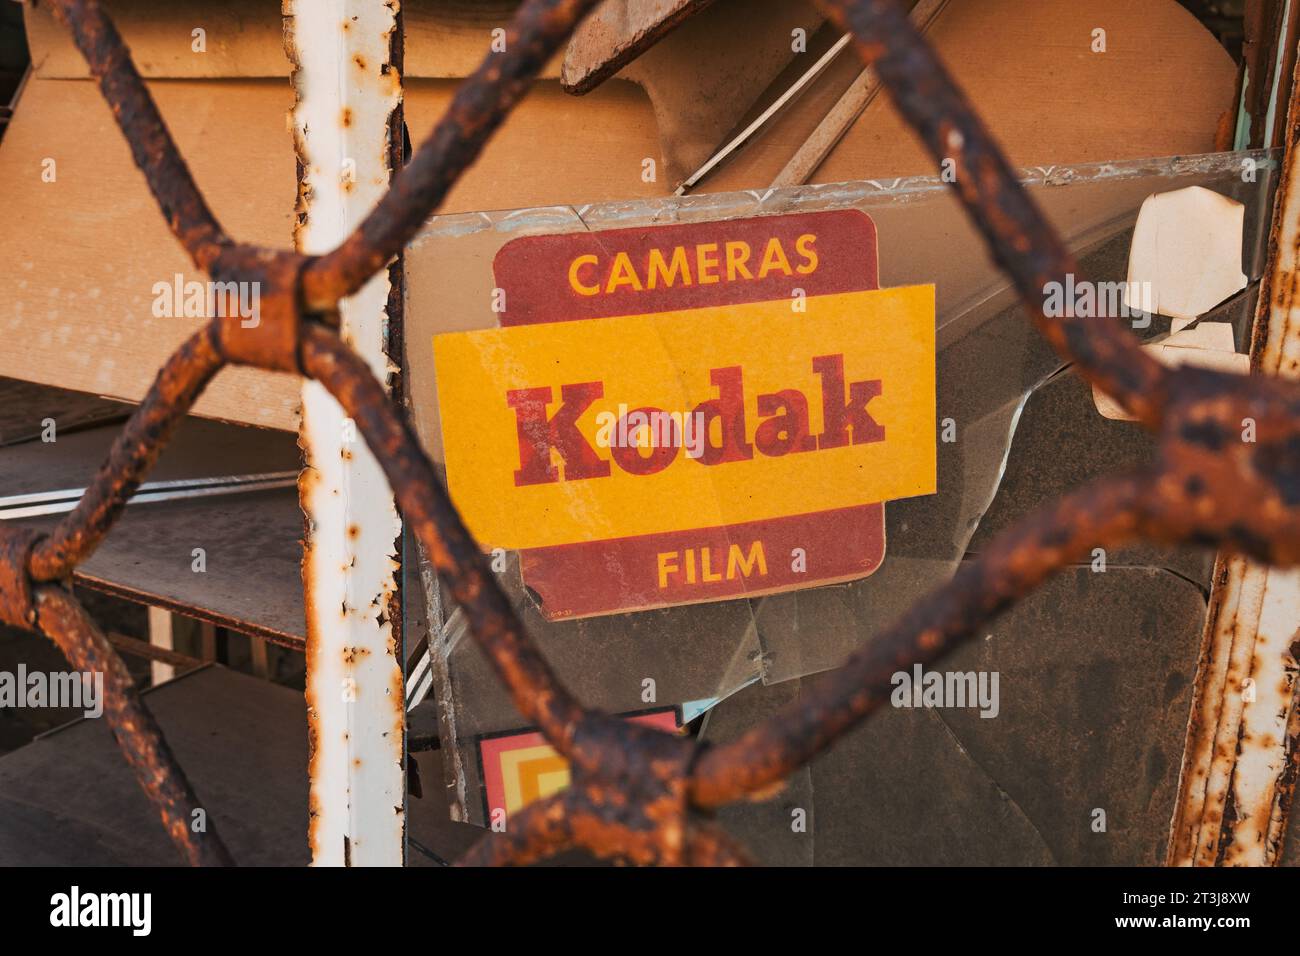 Ein Kodak-Schild in einem alten Kameraladen in Varosha, Nordzypern. Die Stadt wurde 1974 aufgegeben, nachdem sie von türkischen Truppen eingefallen war. Stockfoto